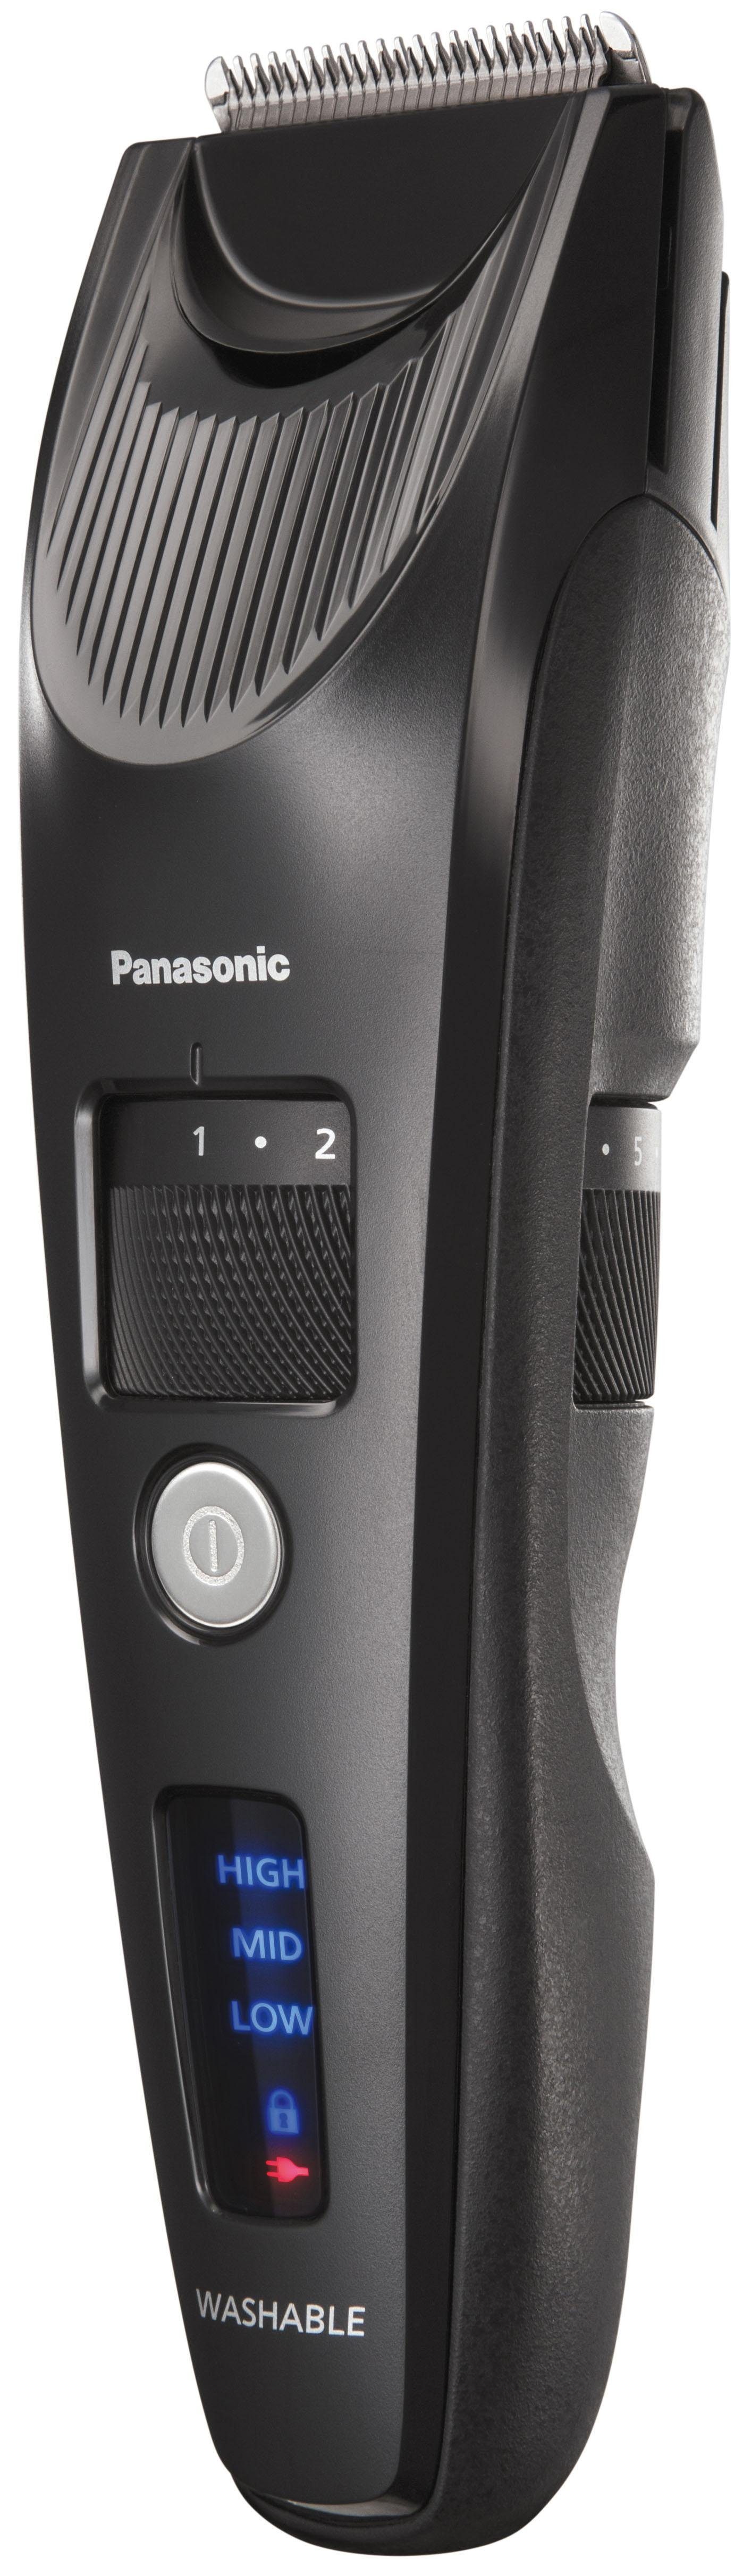 Panasonic Haar- Linearmotor kraftvollem Bartschneider ER-SC40-K803, und mit